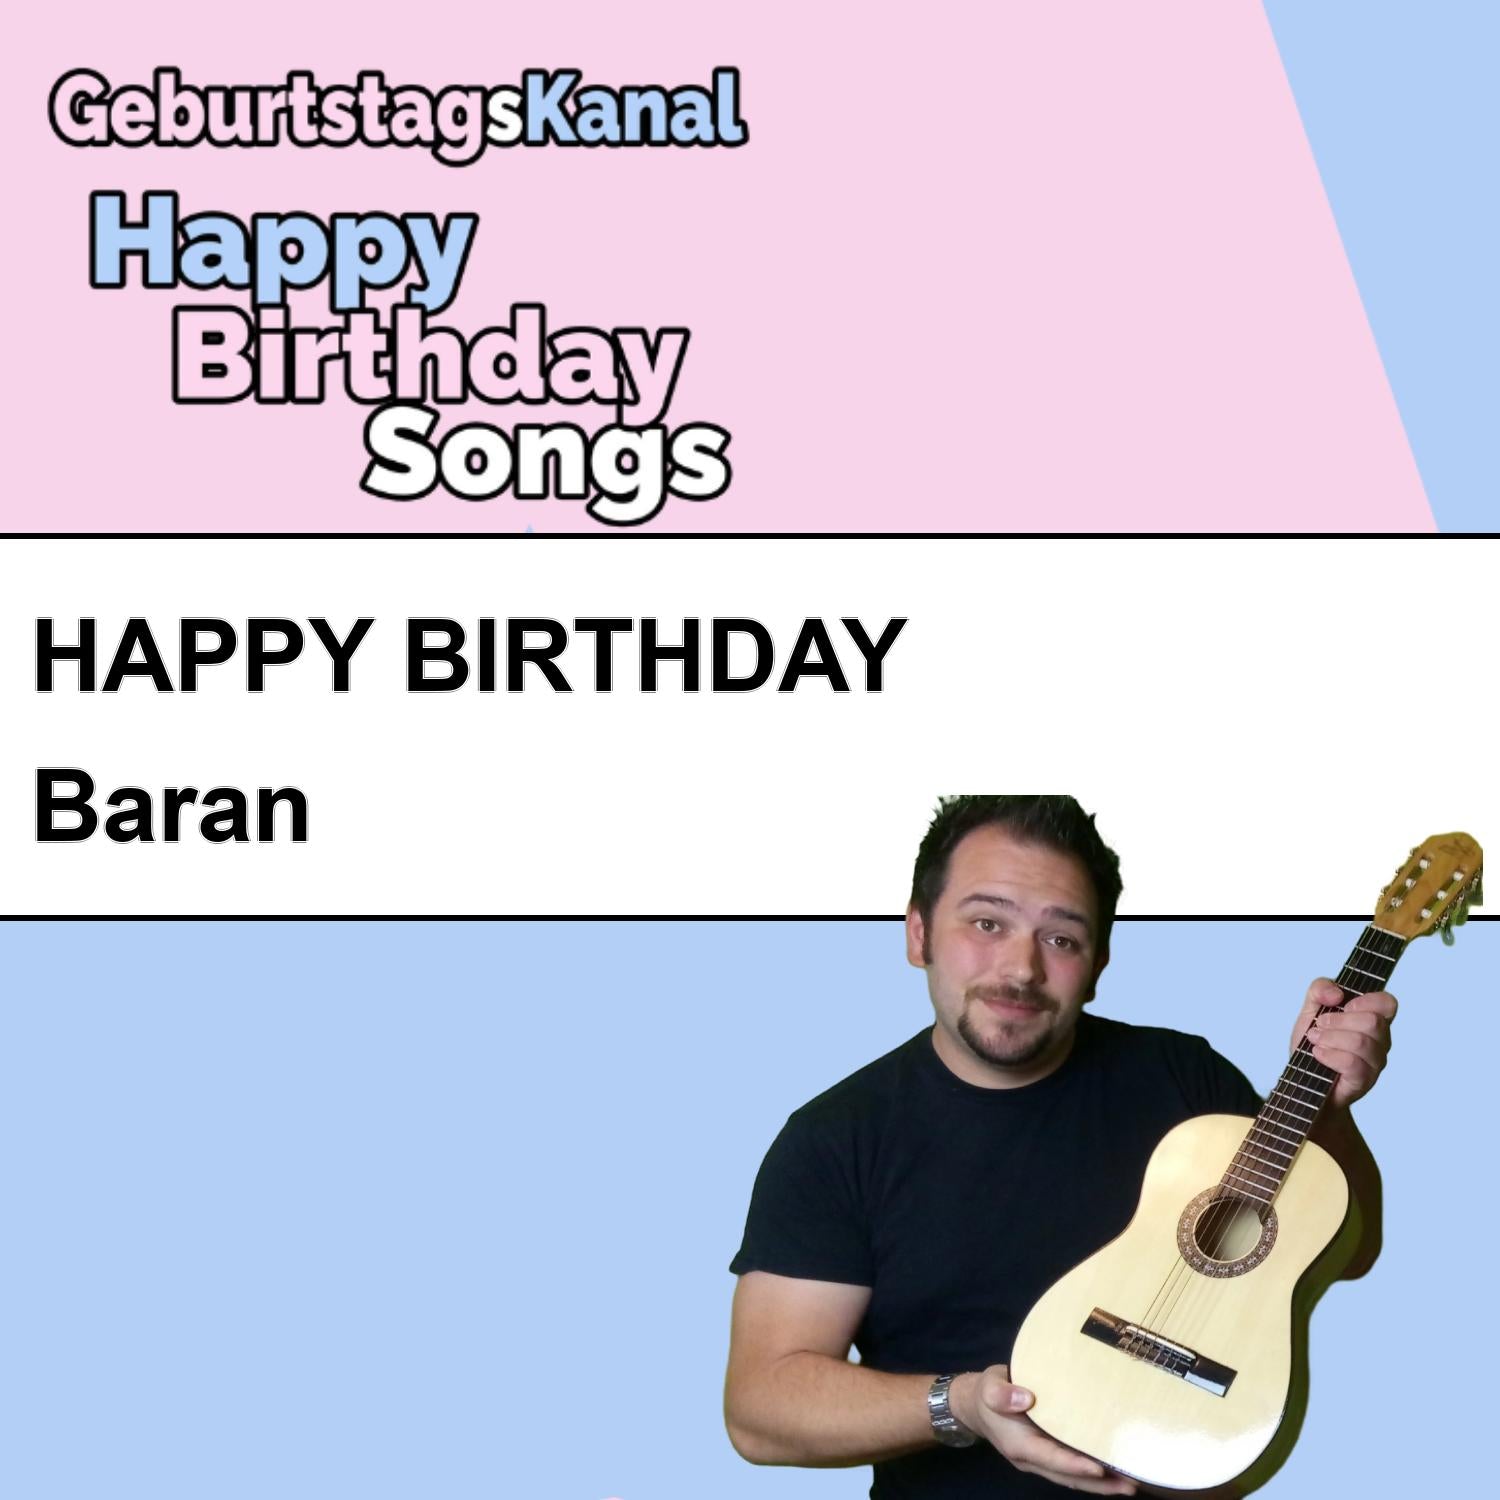 Produktbild Happy Birthday to you Baran mit Wunschgrußbotschaft